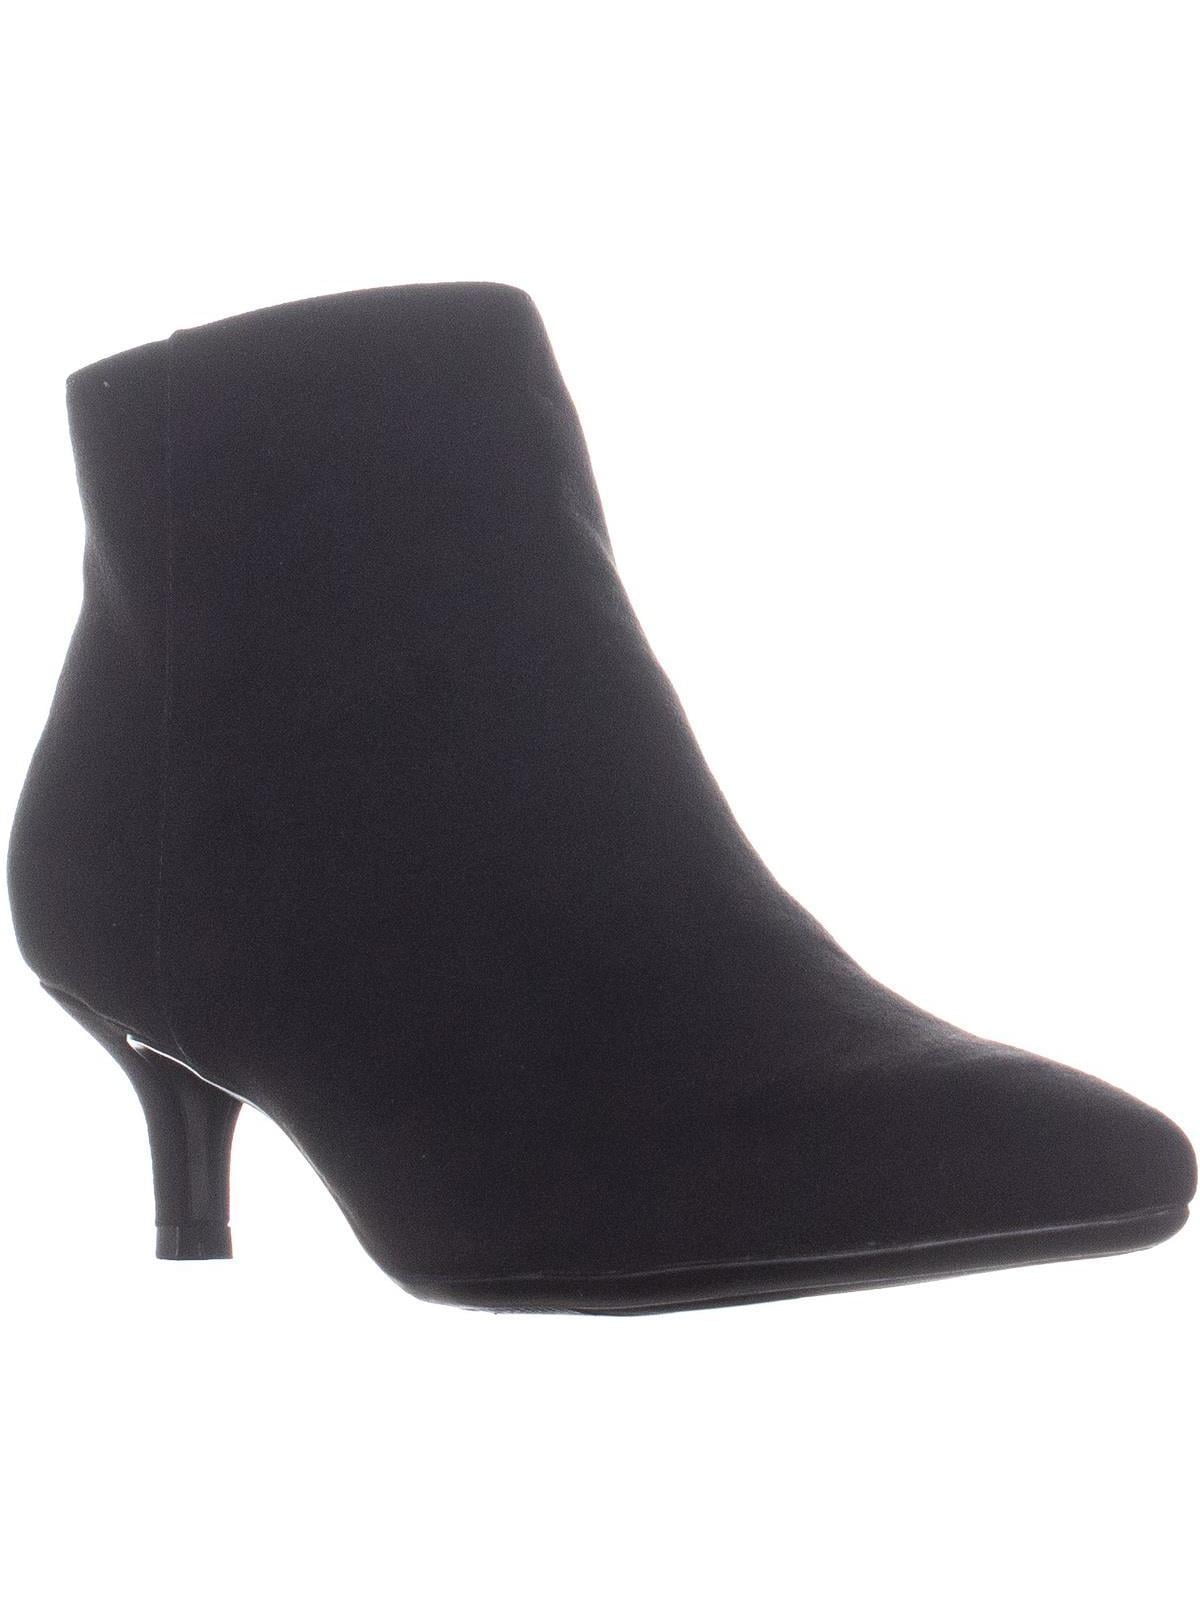 womens black kitten heel ankle boots